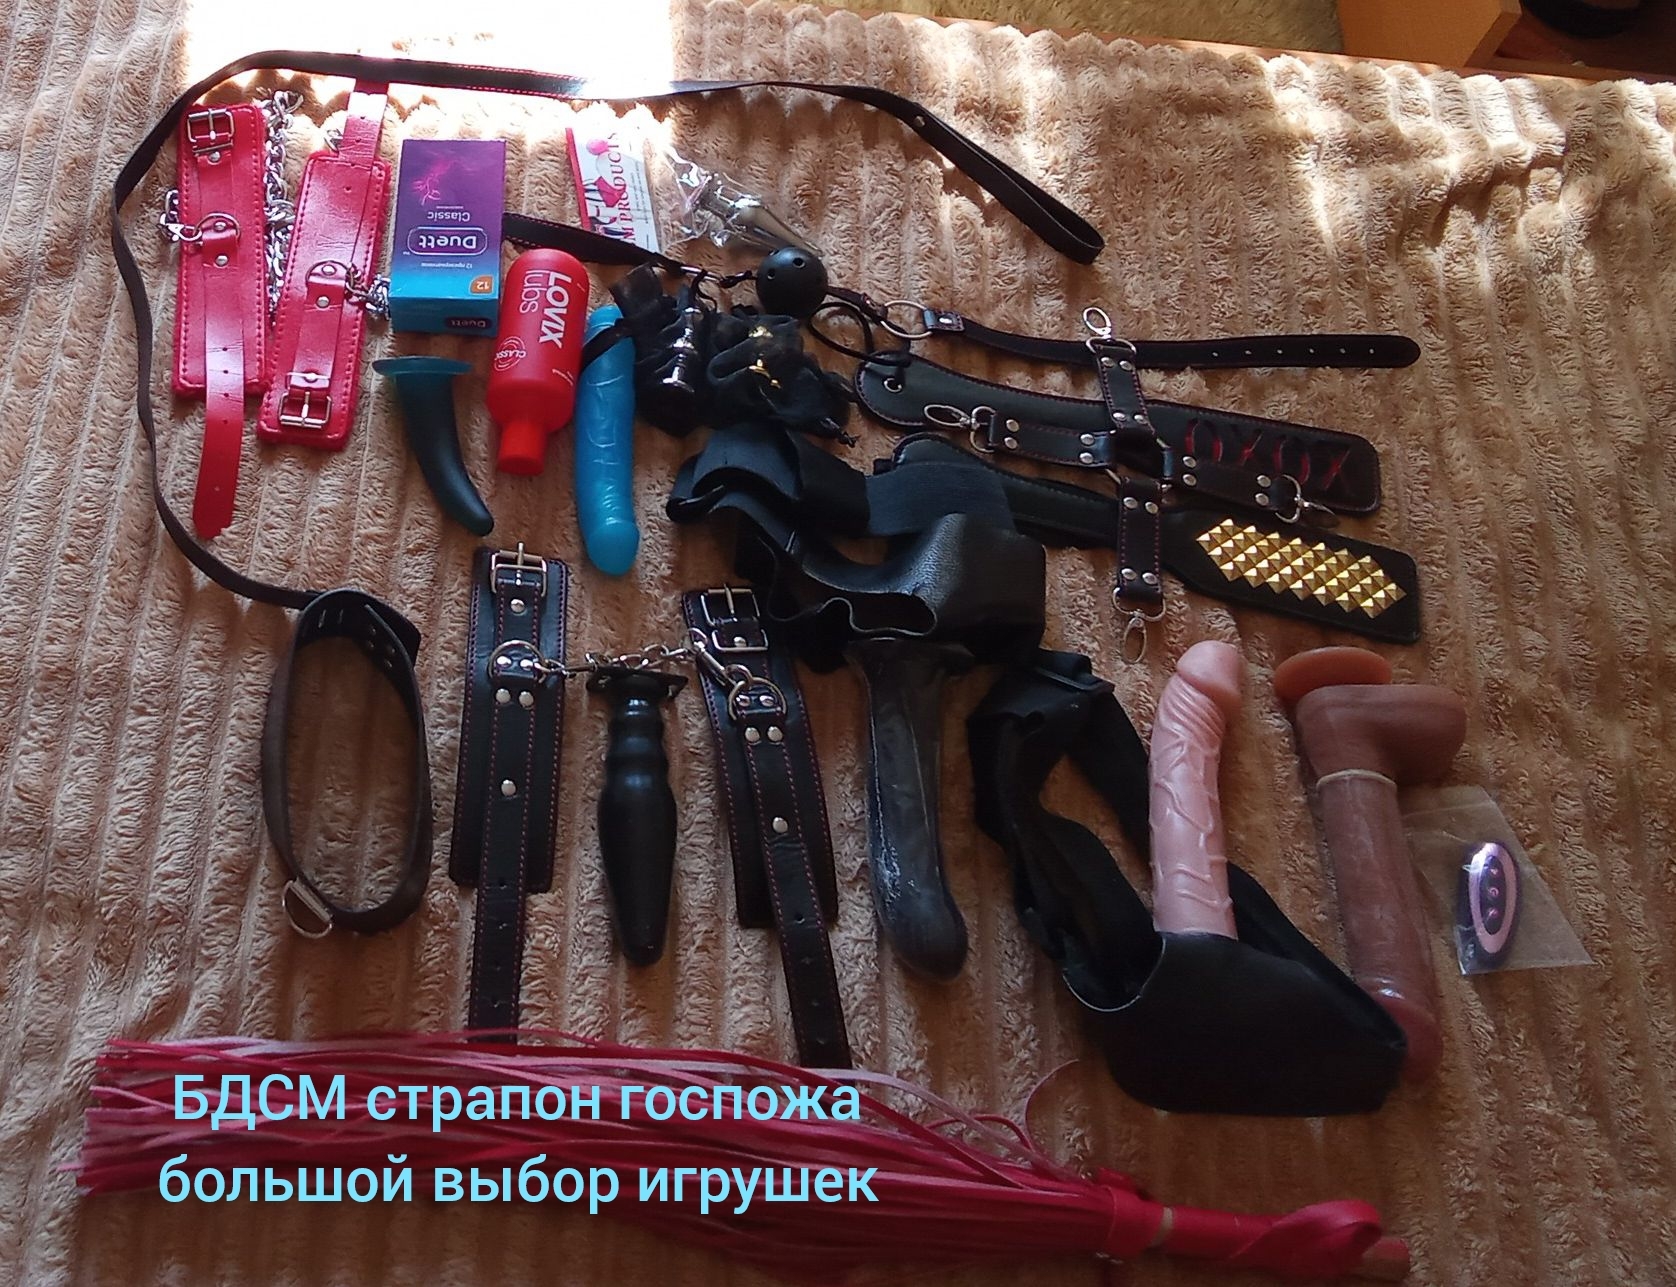 Предоставляю услуги госпожи в Южно-Сахалинске | ladydosug65.ru